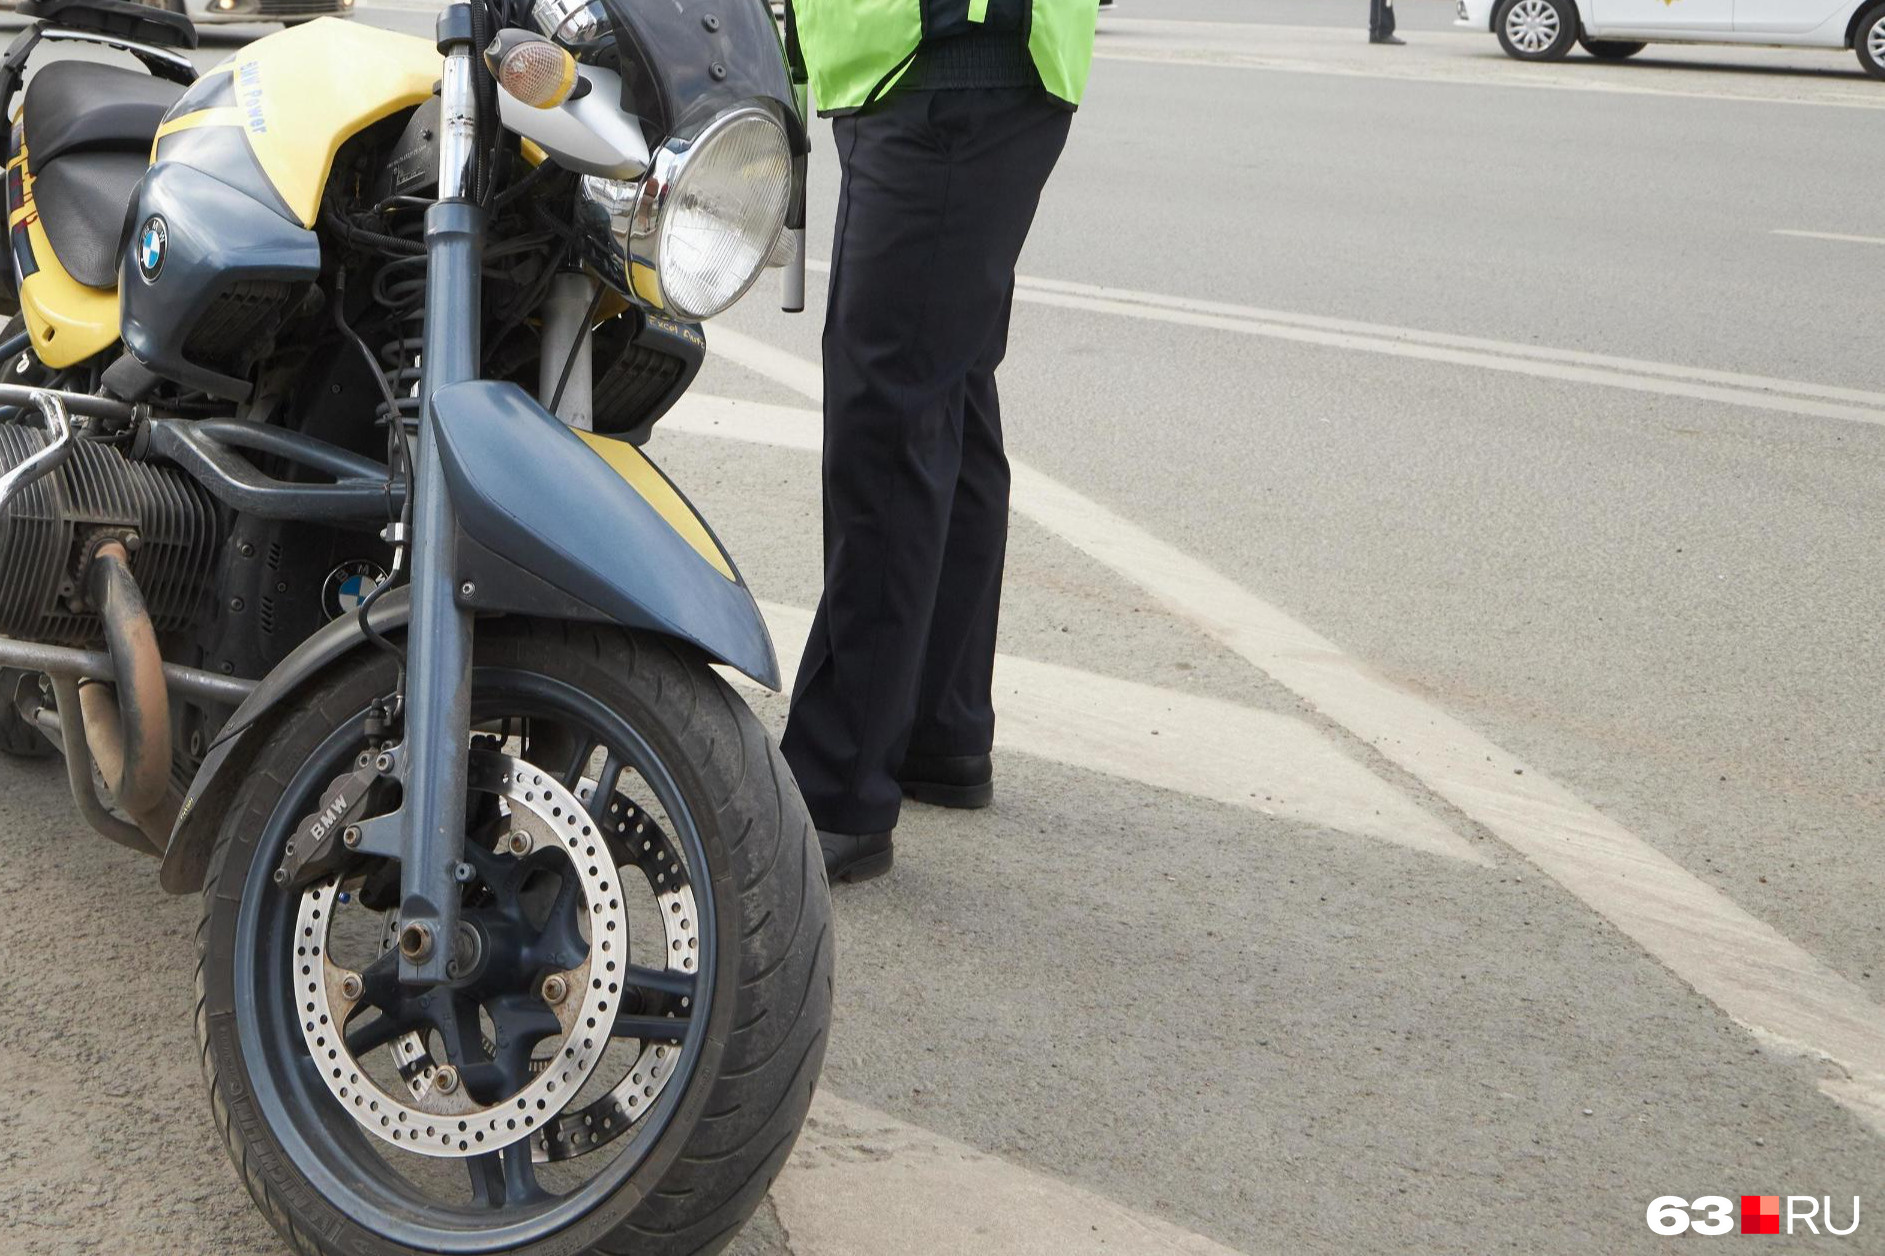 Несовершеннолетний мотоциклист и его пассажир попали в ДТП в Забайкалье